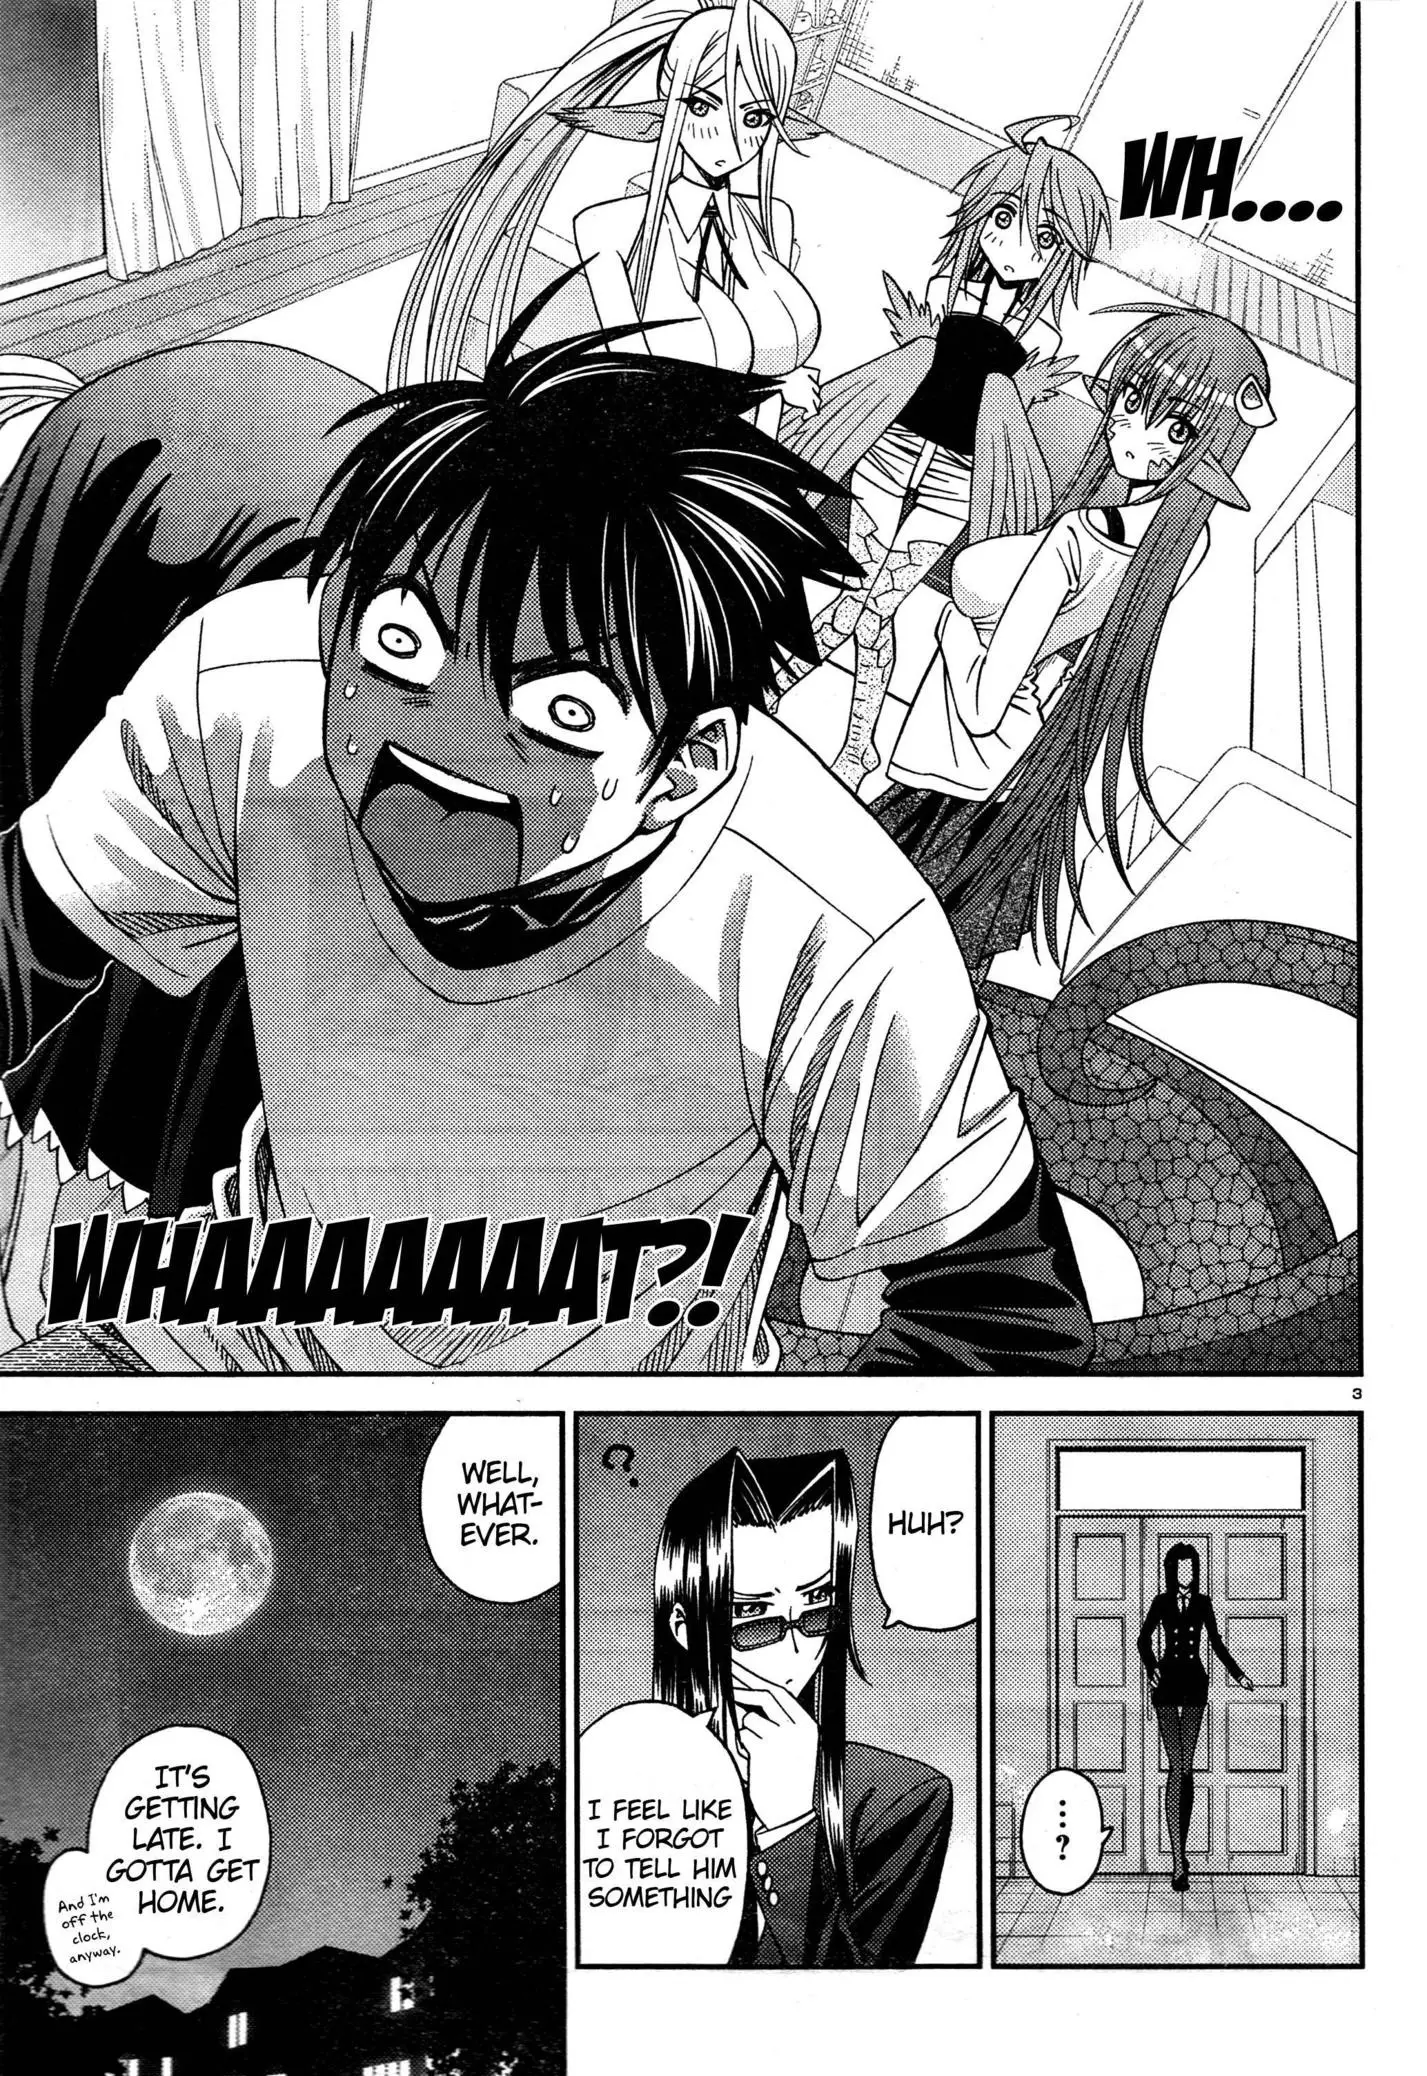 Monster Musume no Iru Nichijou - 6 page p_00007